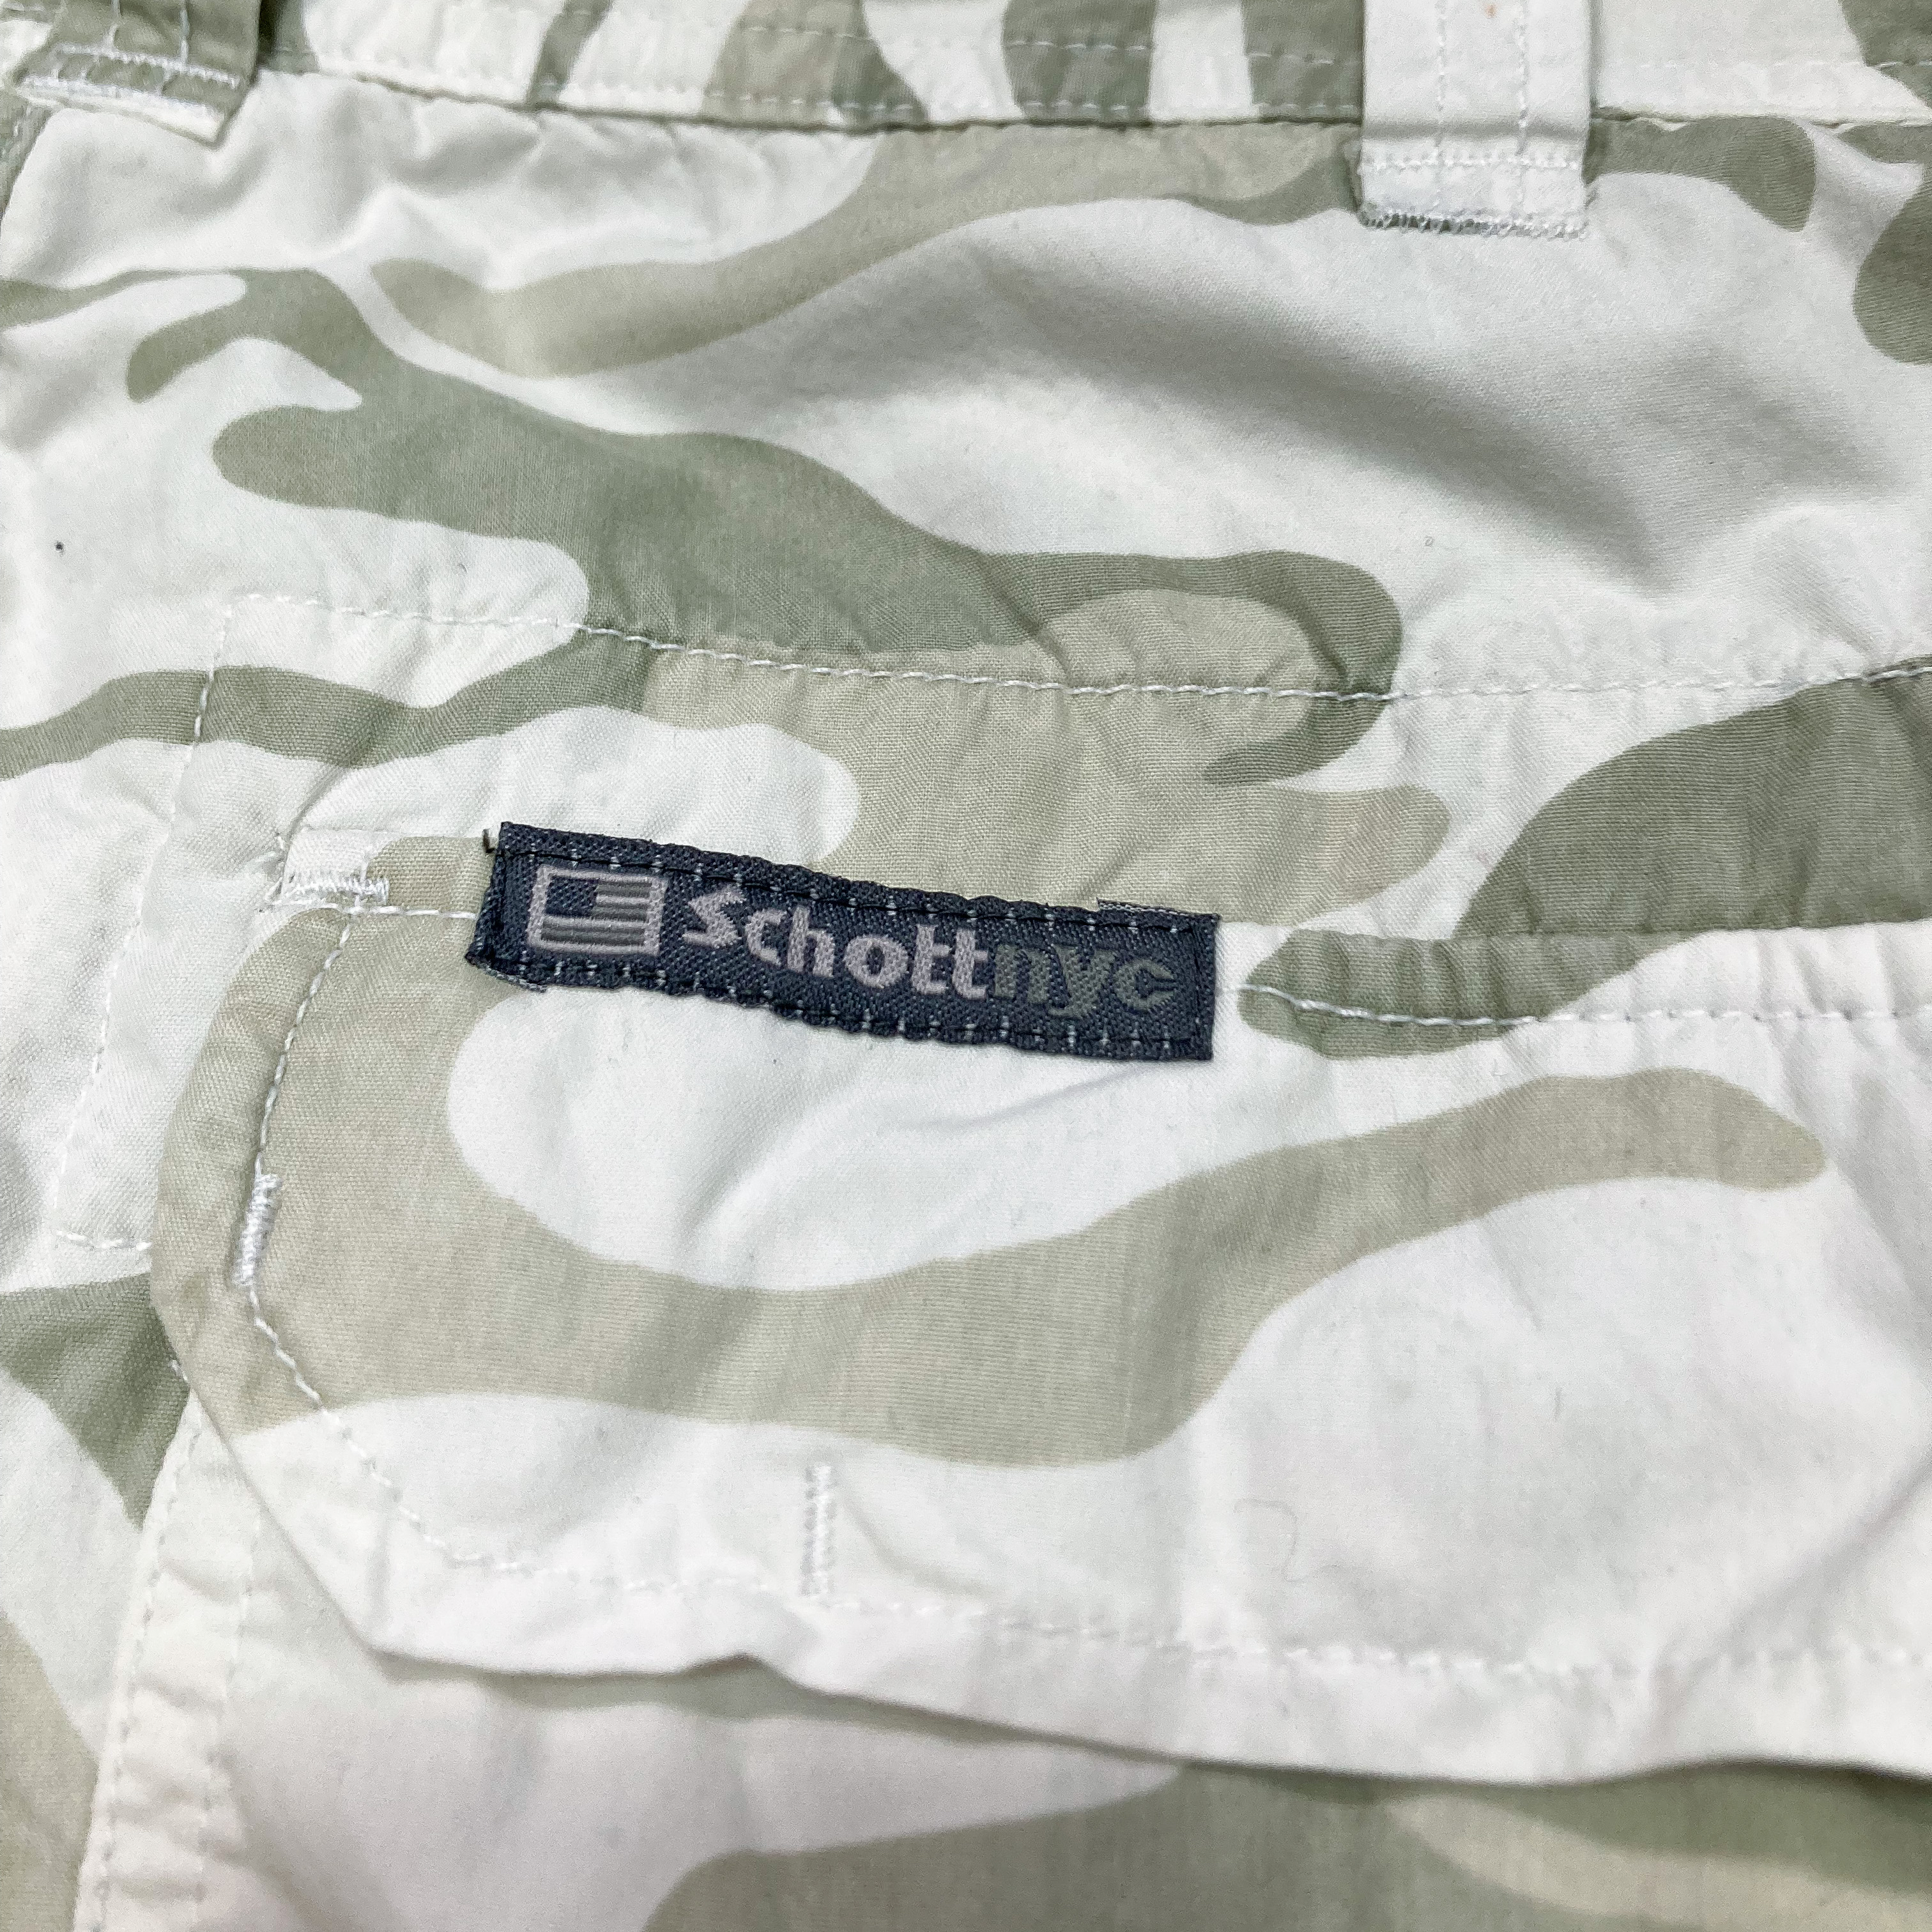 Schott N.Y.C white camo nylon pants